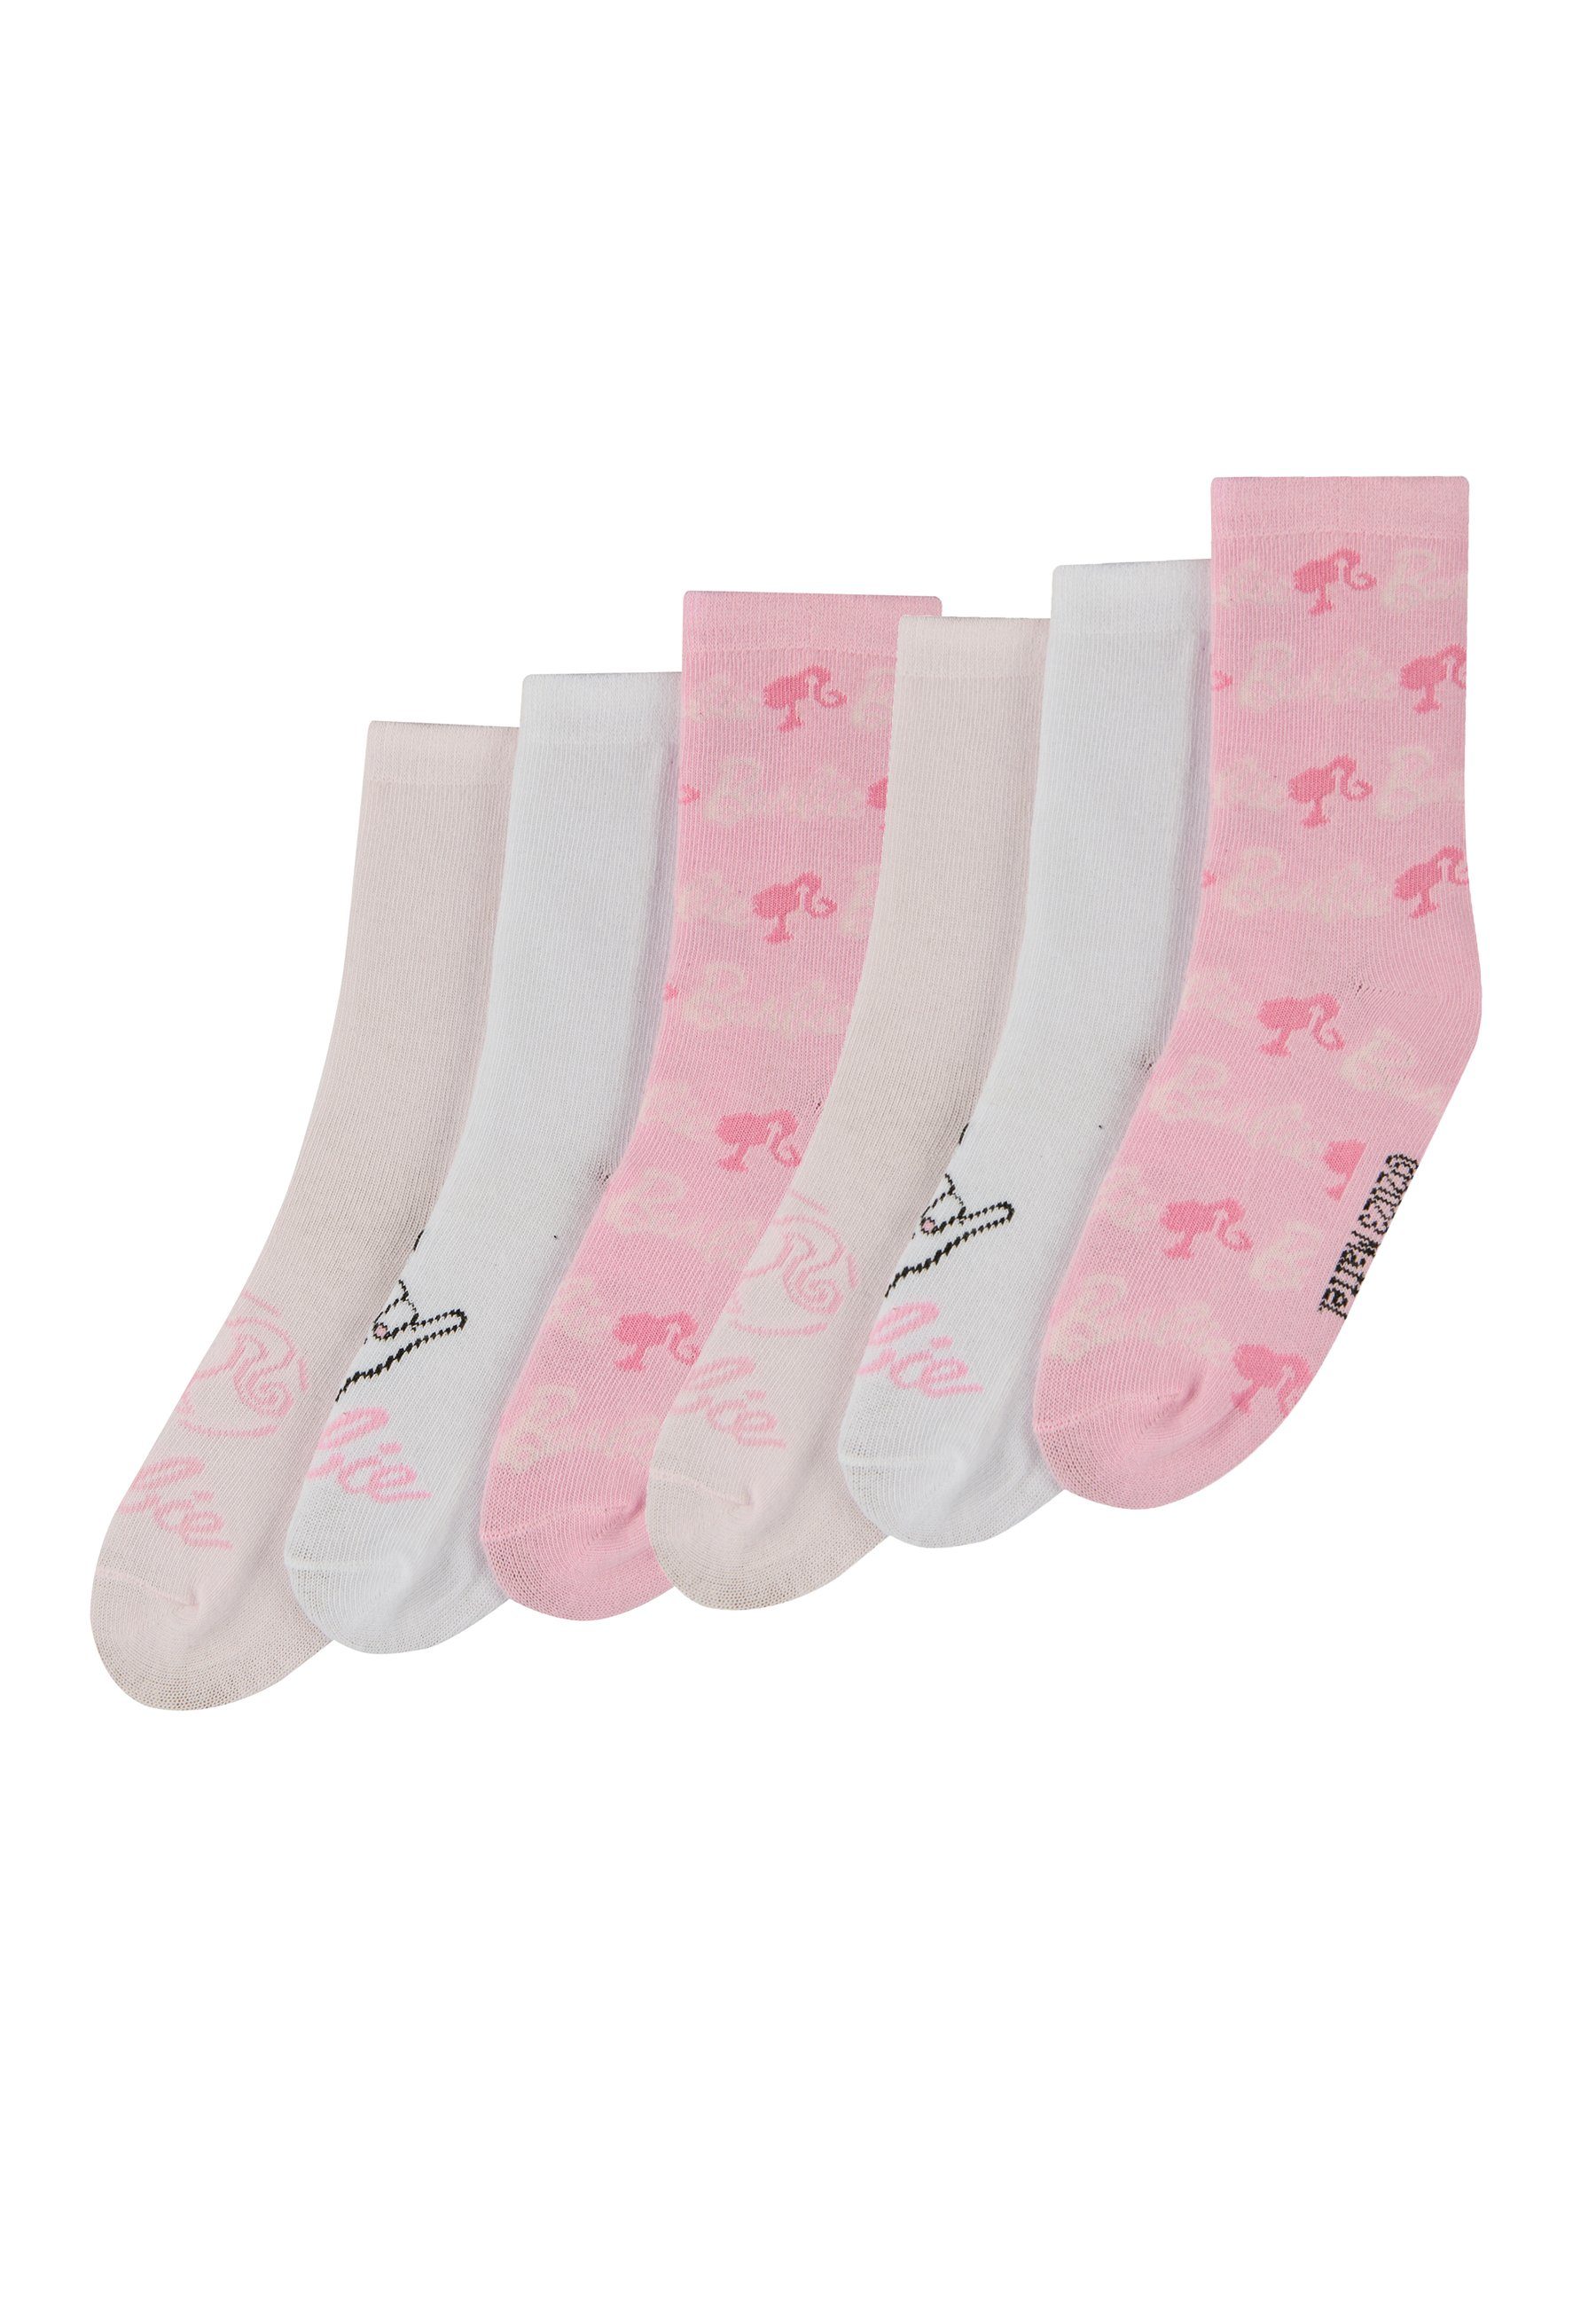 ONOMATO! Socken Barbie Kinder Mädchen Socken 6er Pack (6-Paar)